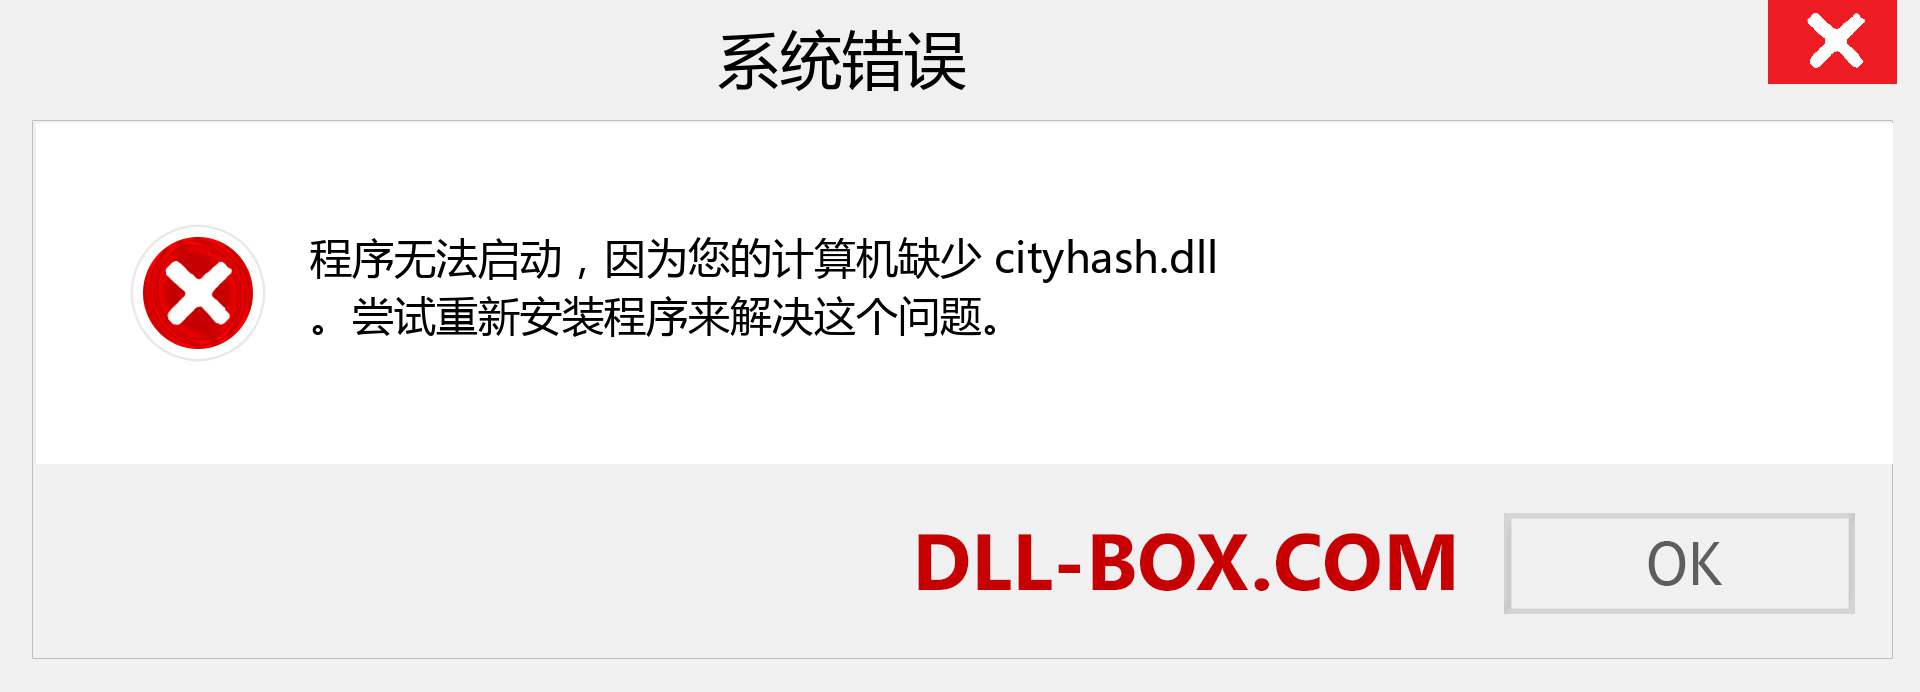 cityhash.dll 文件丢失？。 适用于 Windows 7、8、10 的下载 - 修复 Windows、照片、图像上的 cityhash dll 丢失错误